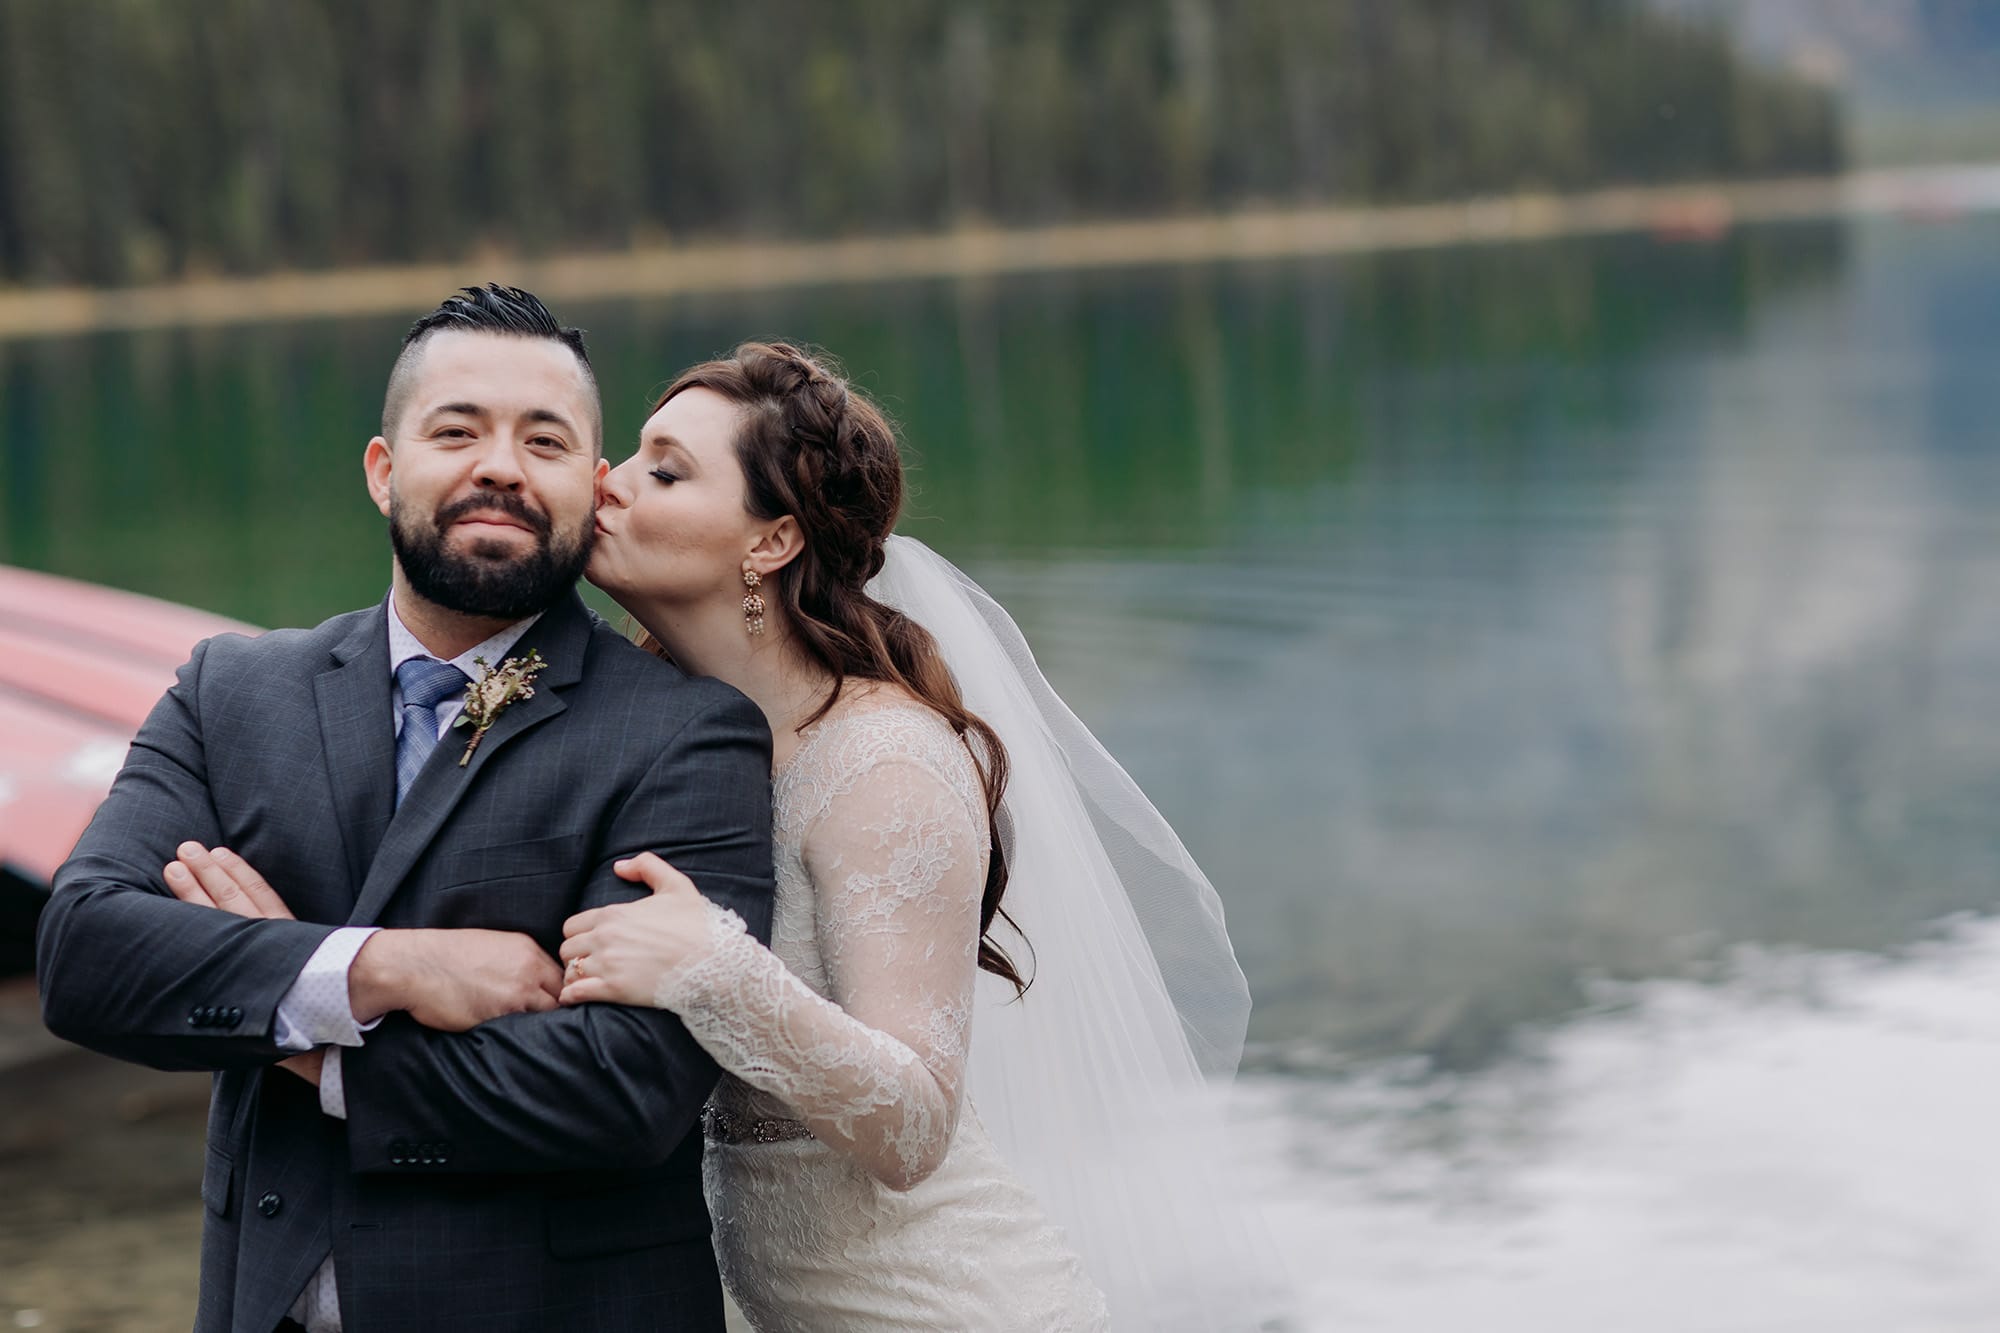 emerald lake wedding photography